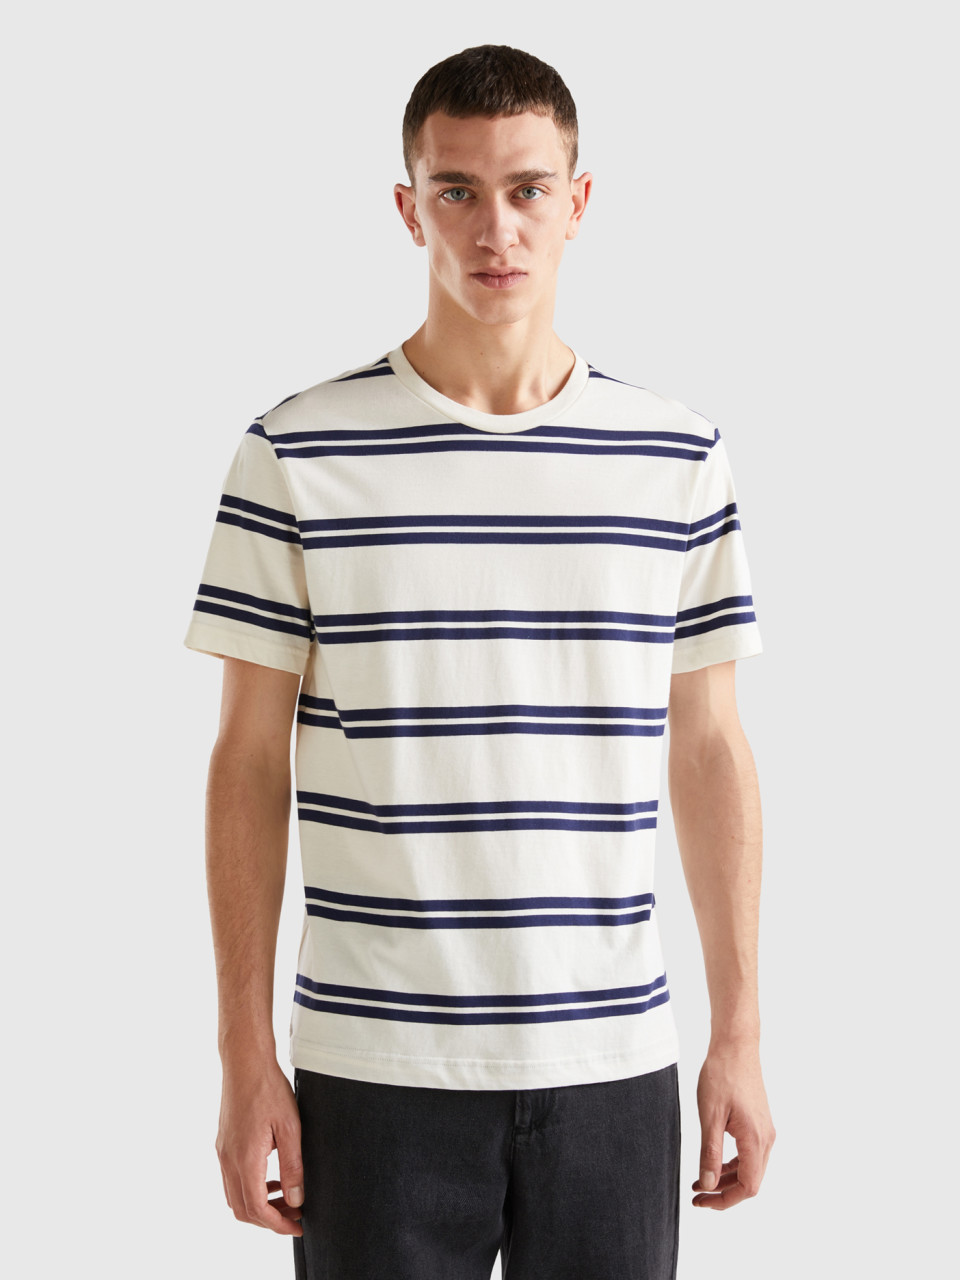 Benetton, Striped Short Sleeve T-shirt, White, Men